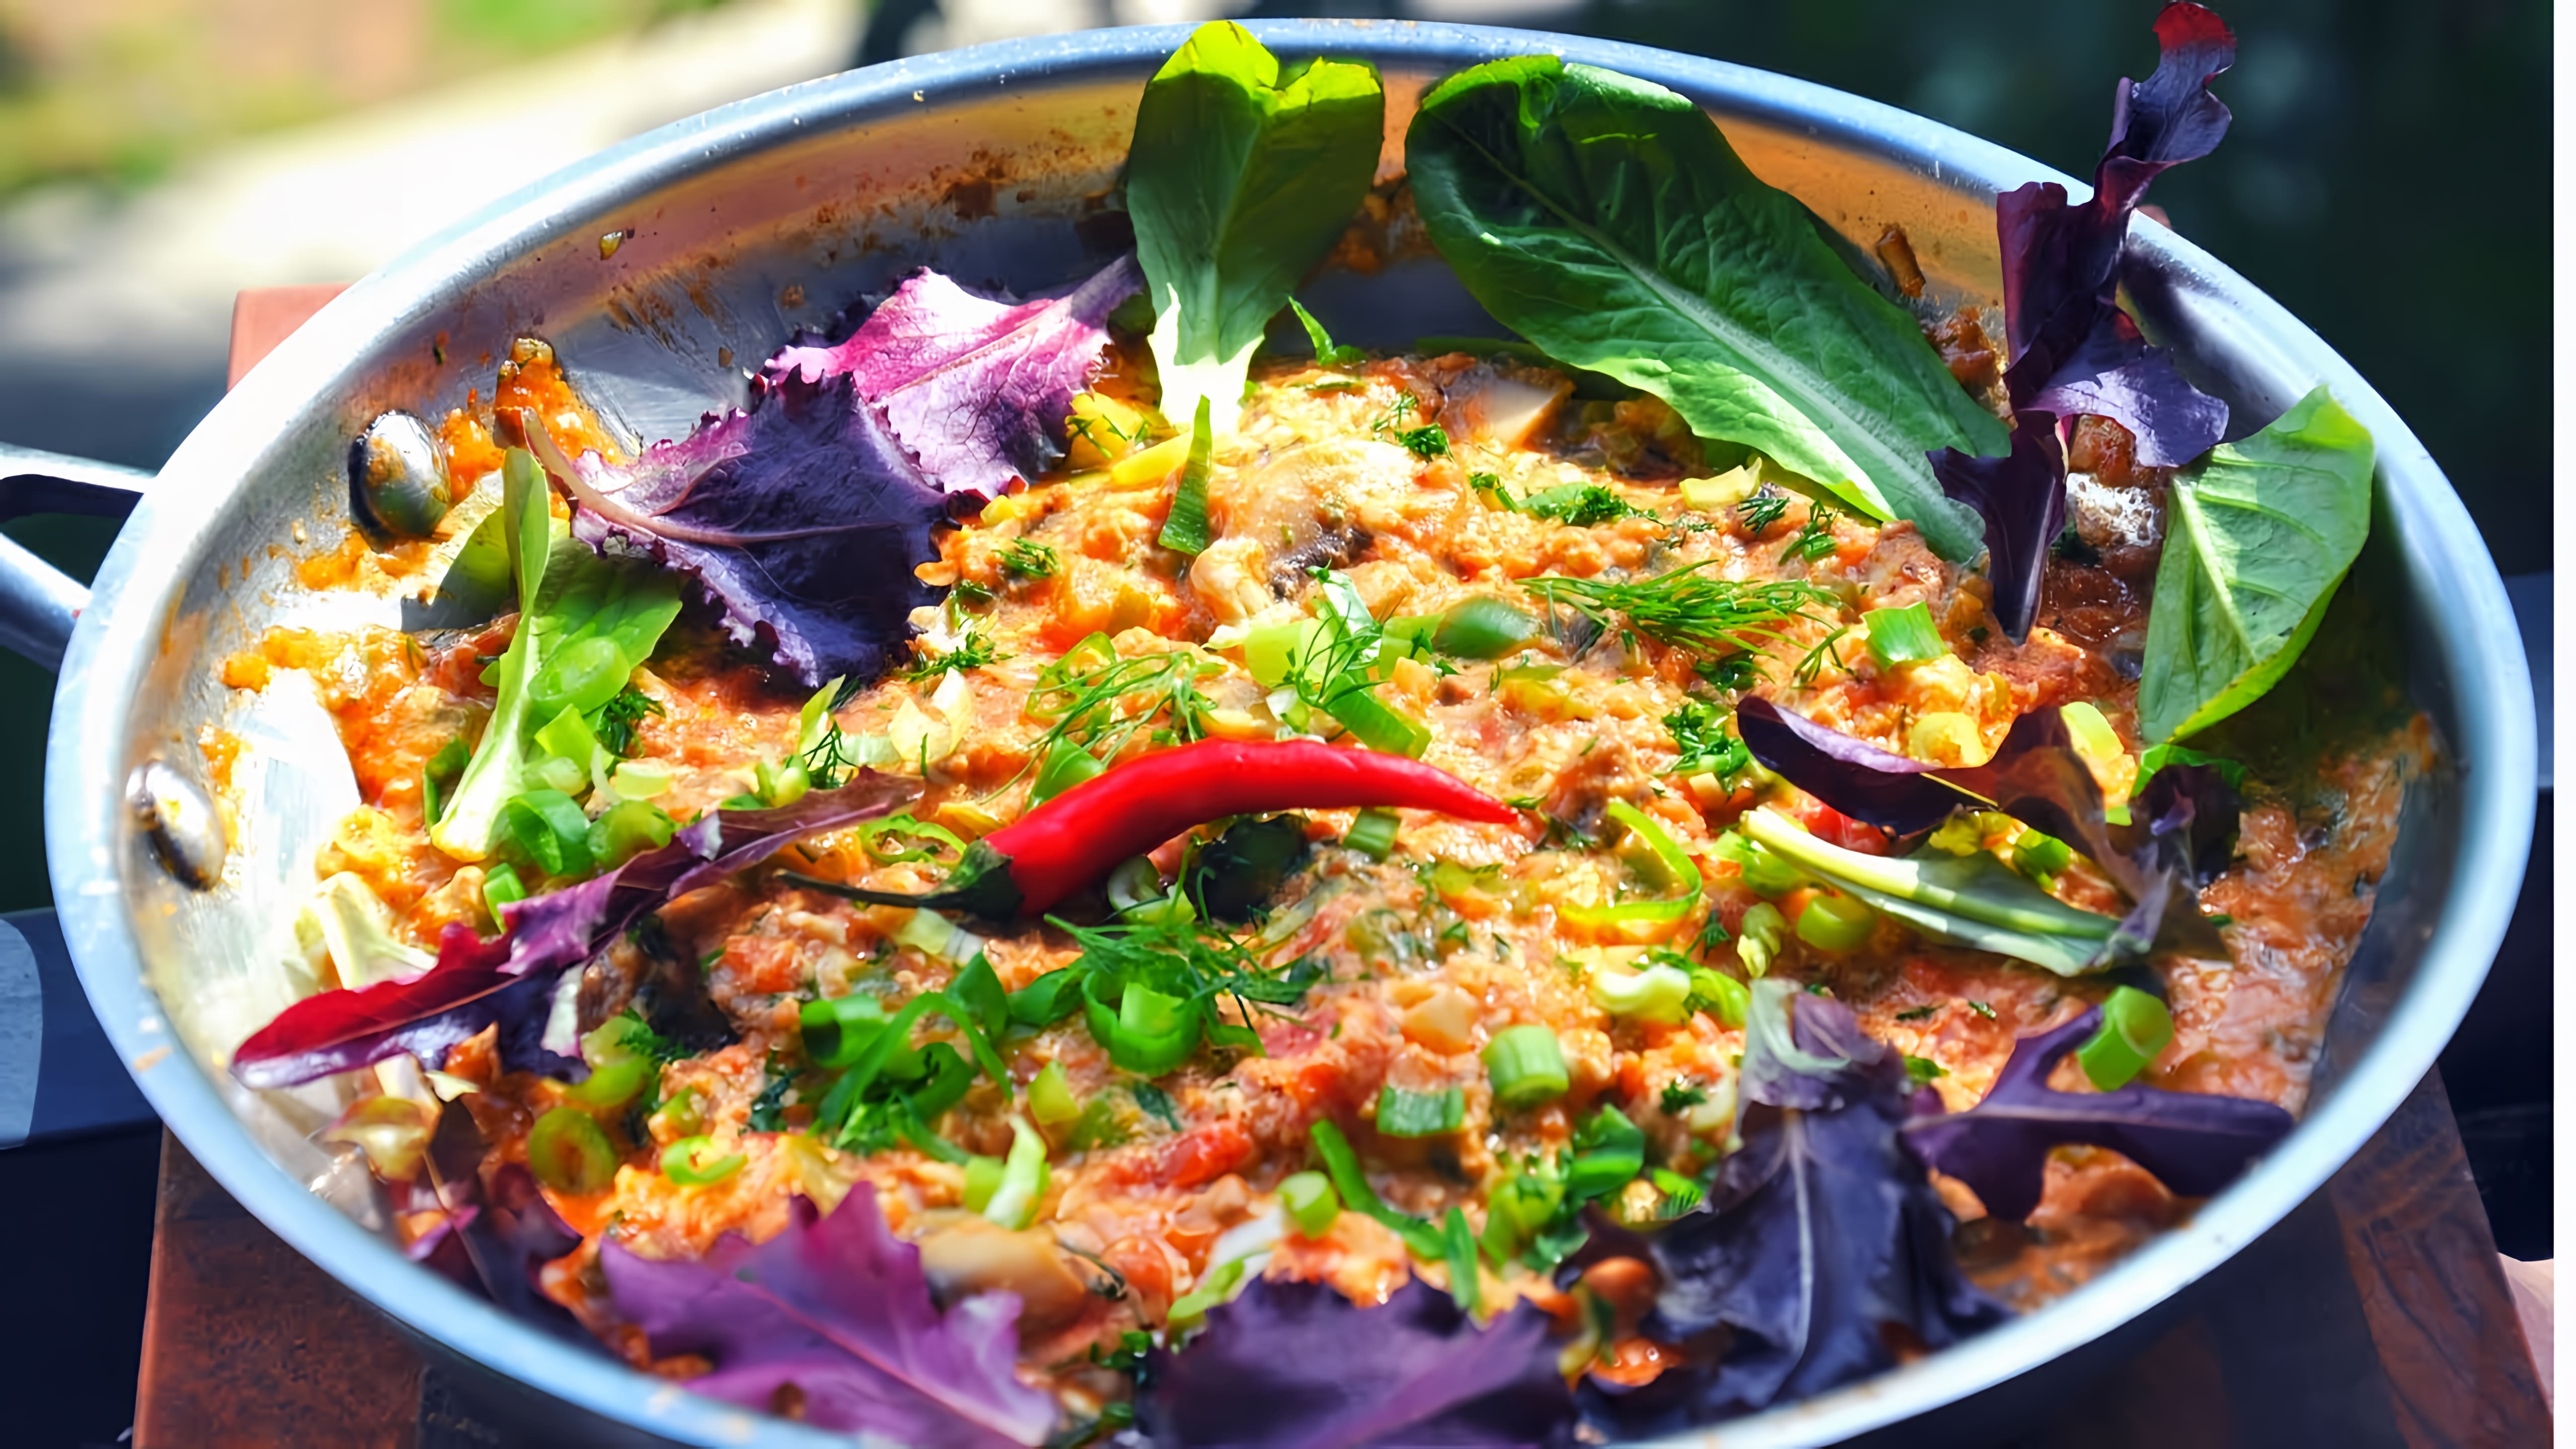 Видео: Менемен король воскресных завтраков| Сытная яичница Быстро, вкусно, полезно! Турецкое блюдо Menemen